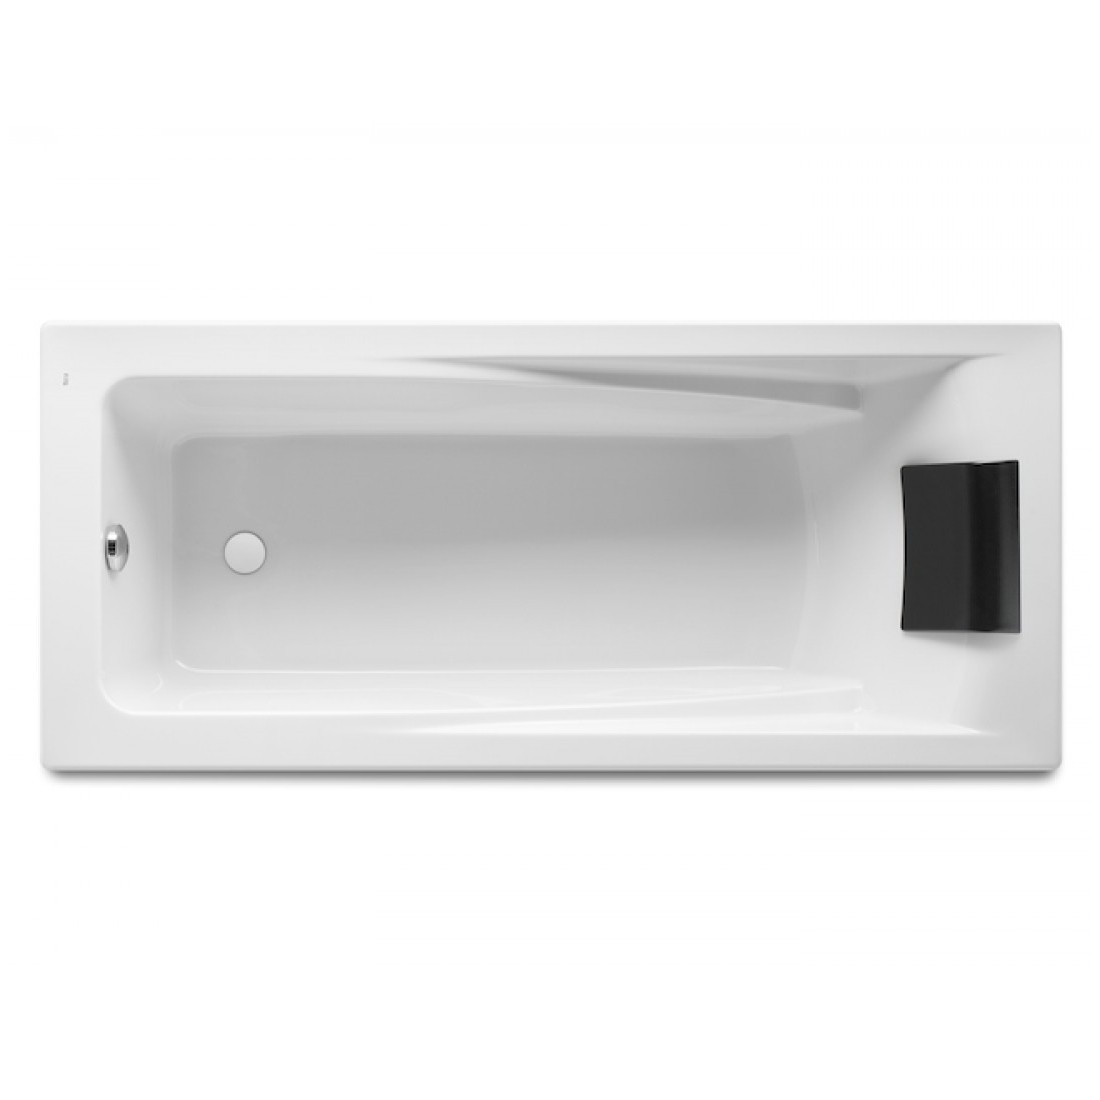 HALL ванна 170*75см, акриловая, прямоугольная, белая, с интегр. подлокНет в наличии